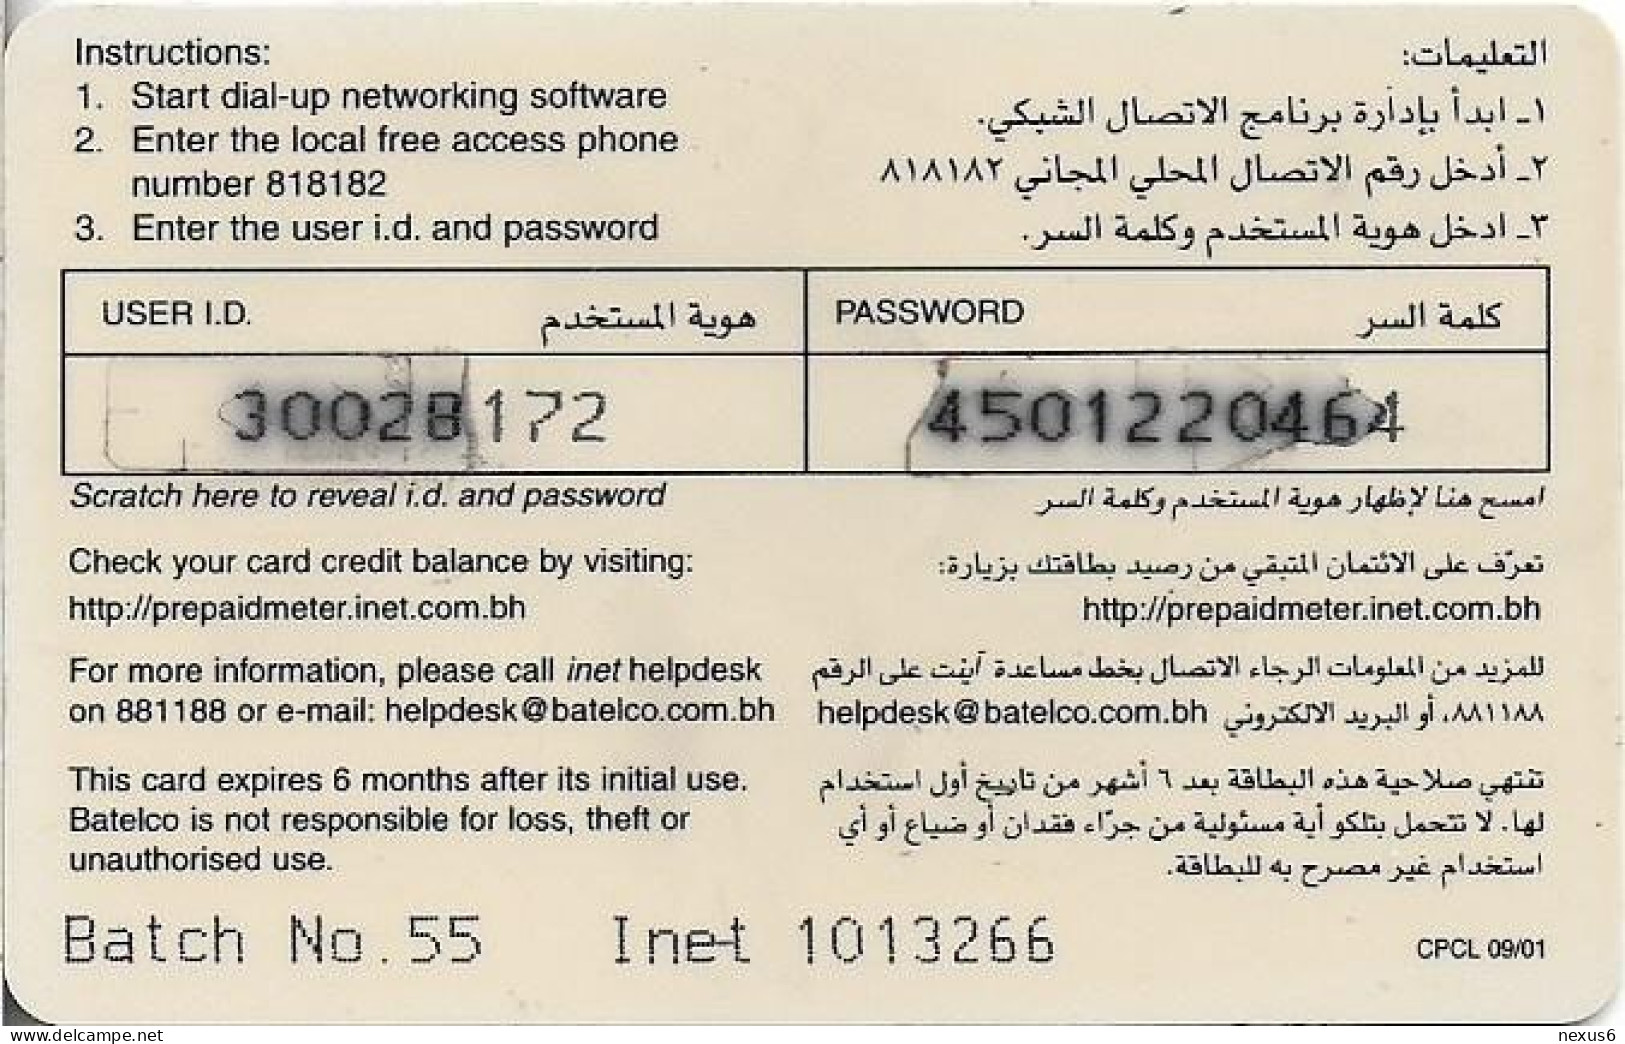 Bahrain - Batelco - Inet Internet Services, 3BD Prepaid Card, Used - Bahrain